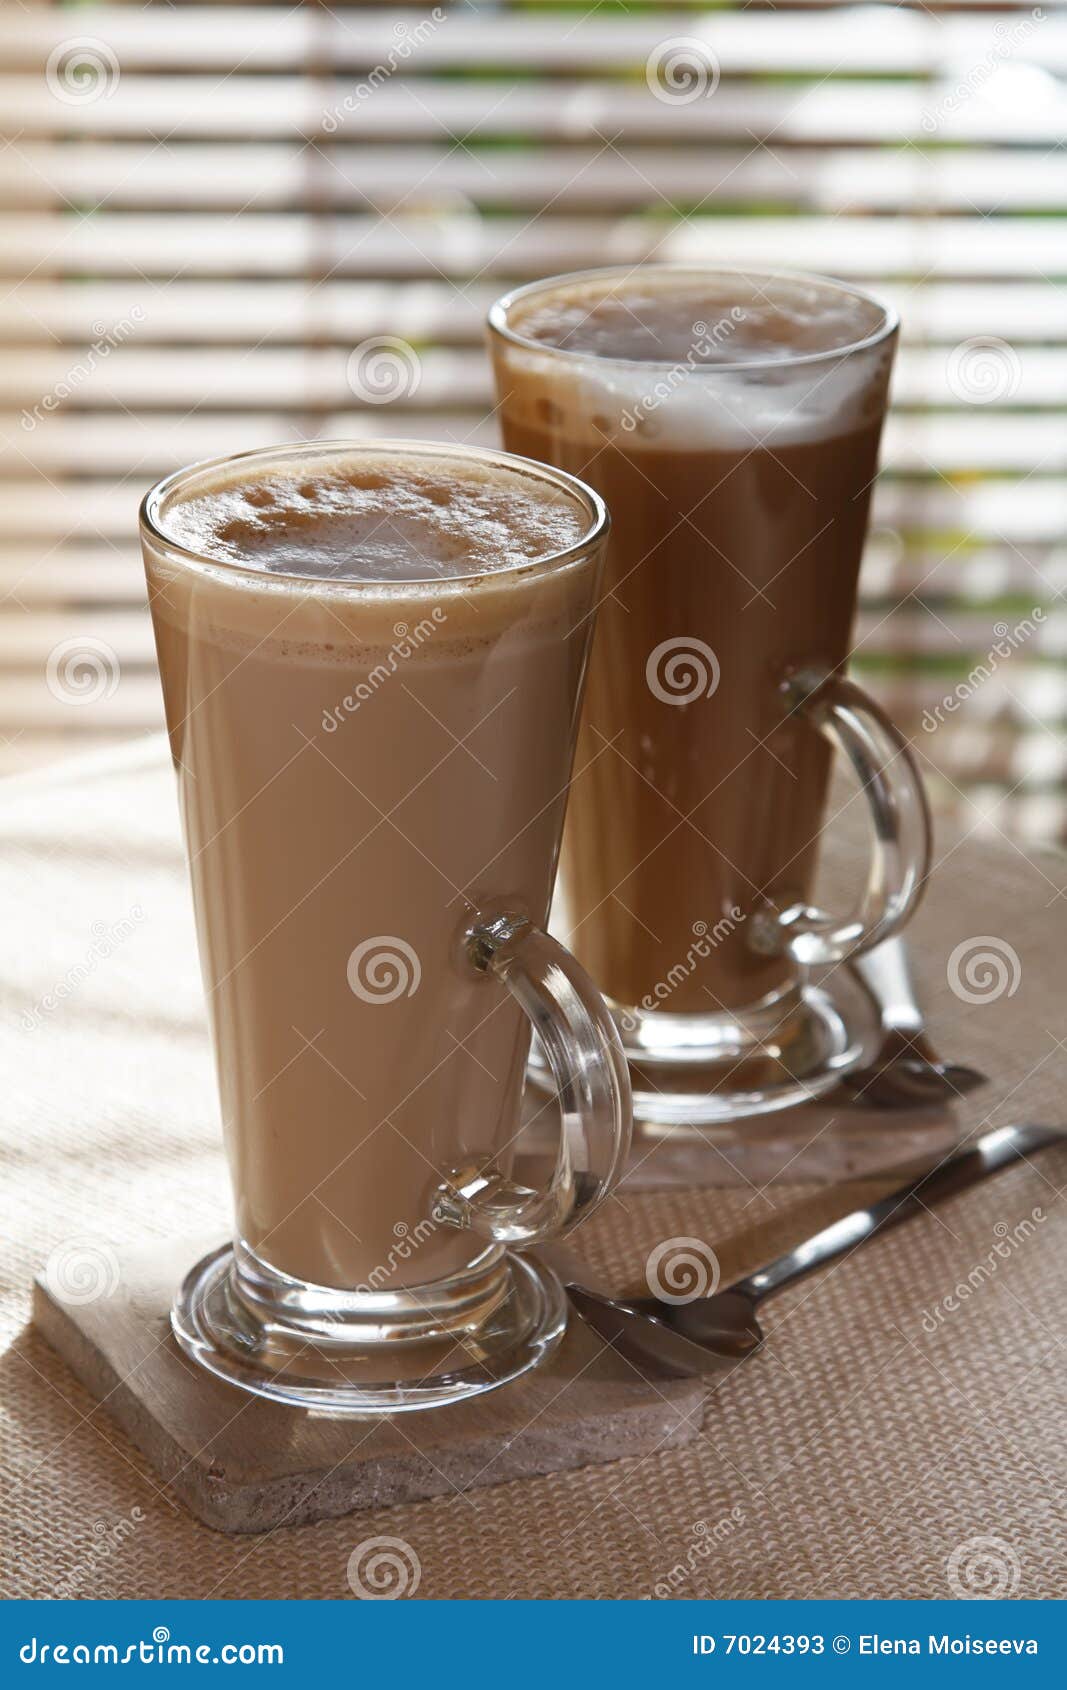 coffee latte macchiato in tall glasses